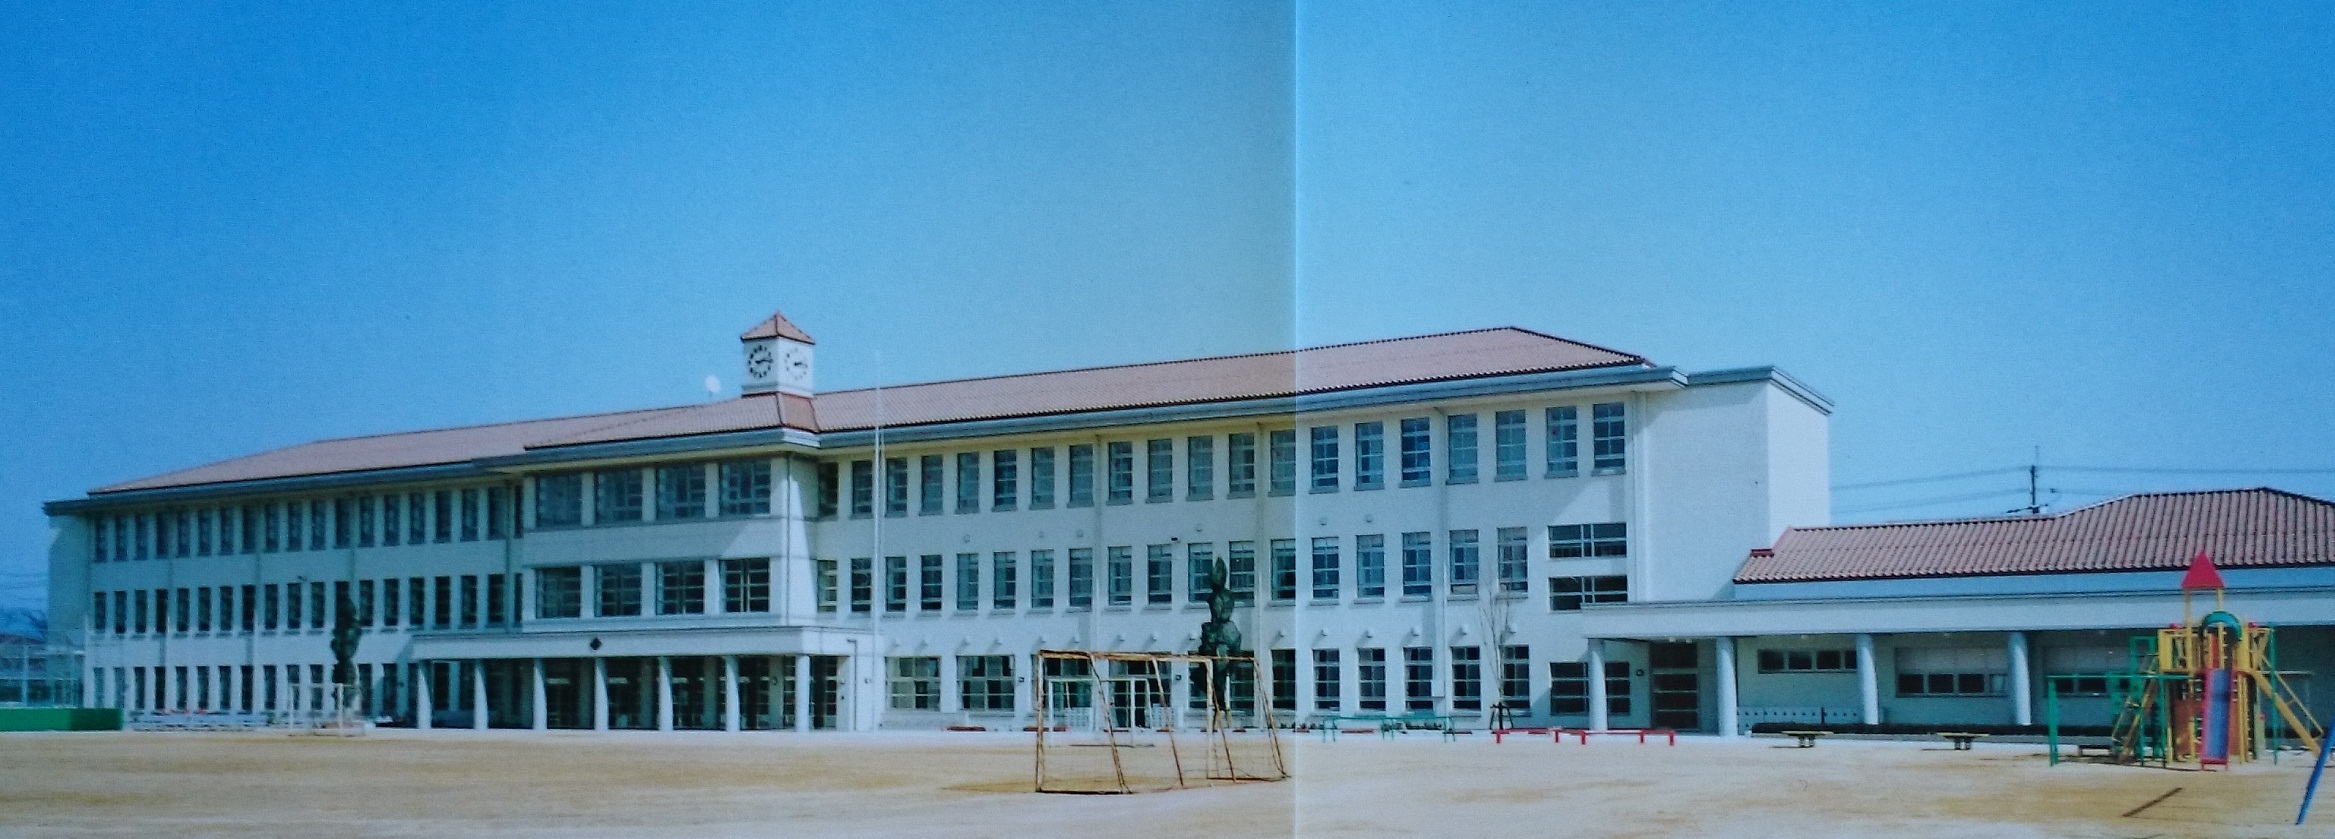 豊郷小学校の写真